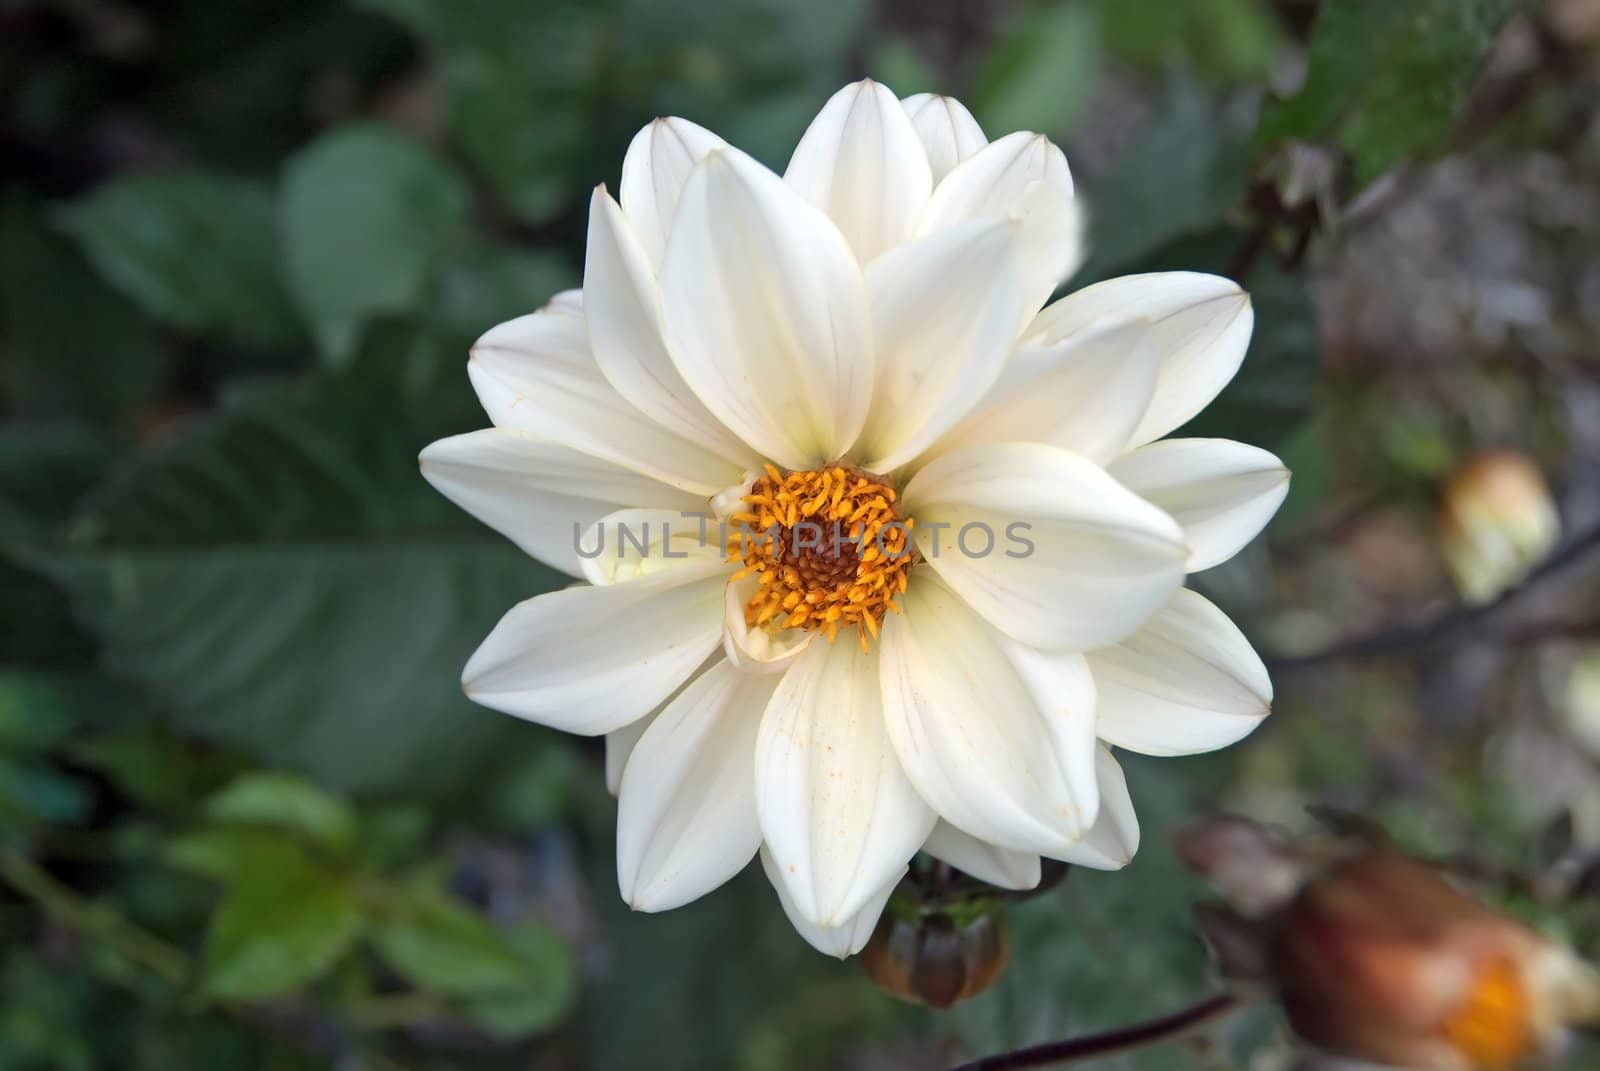 A Closeup of a White Dahlia Flower